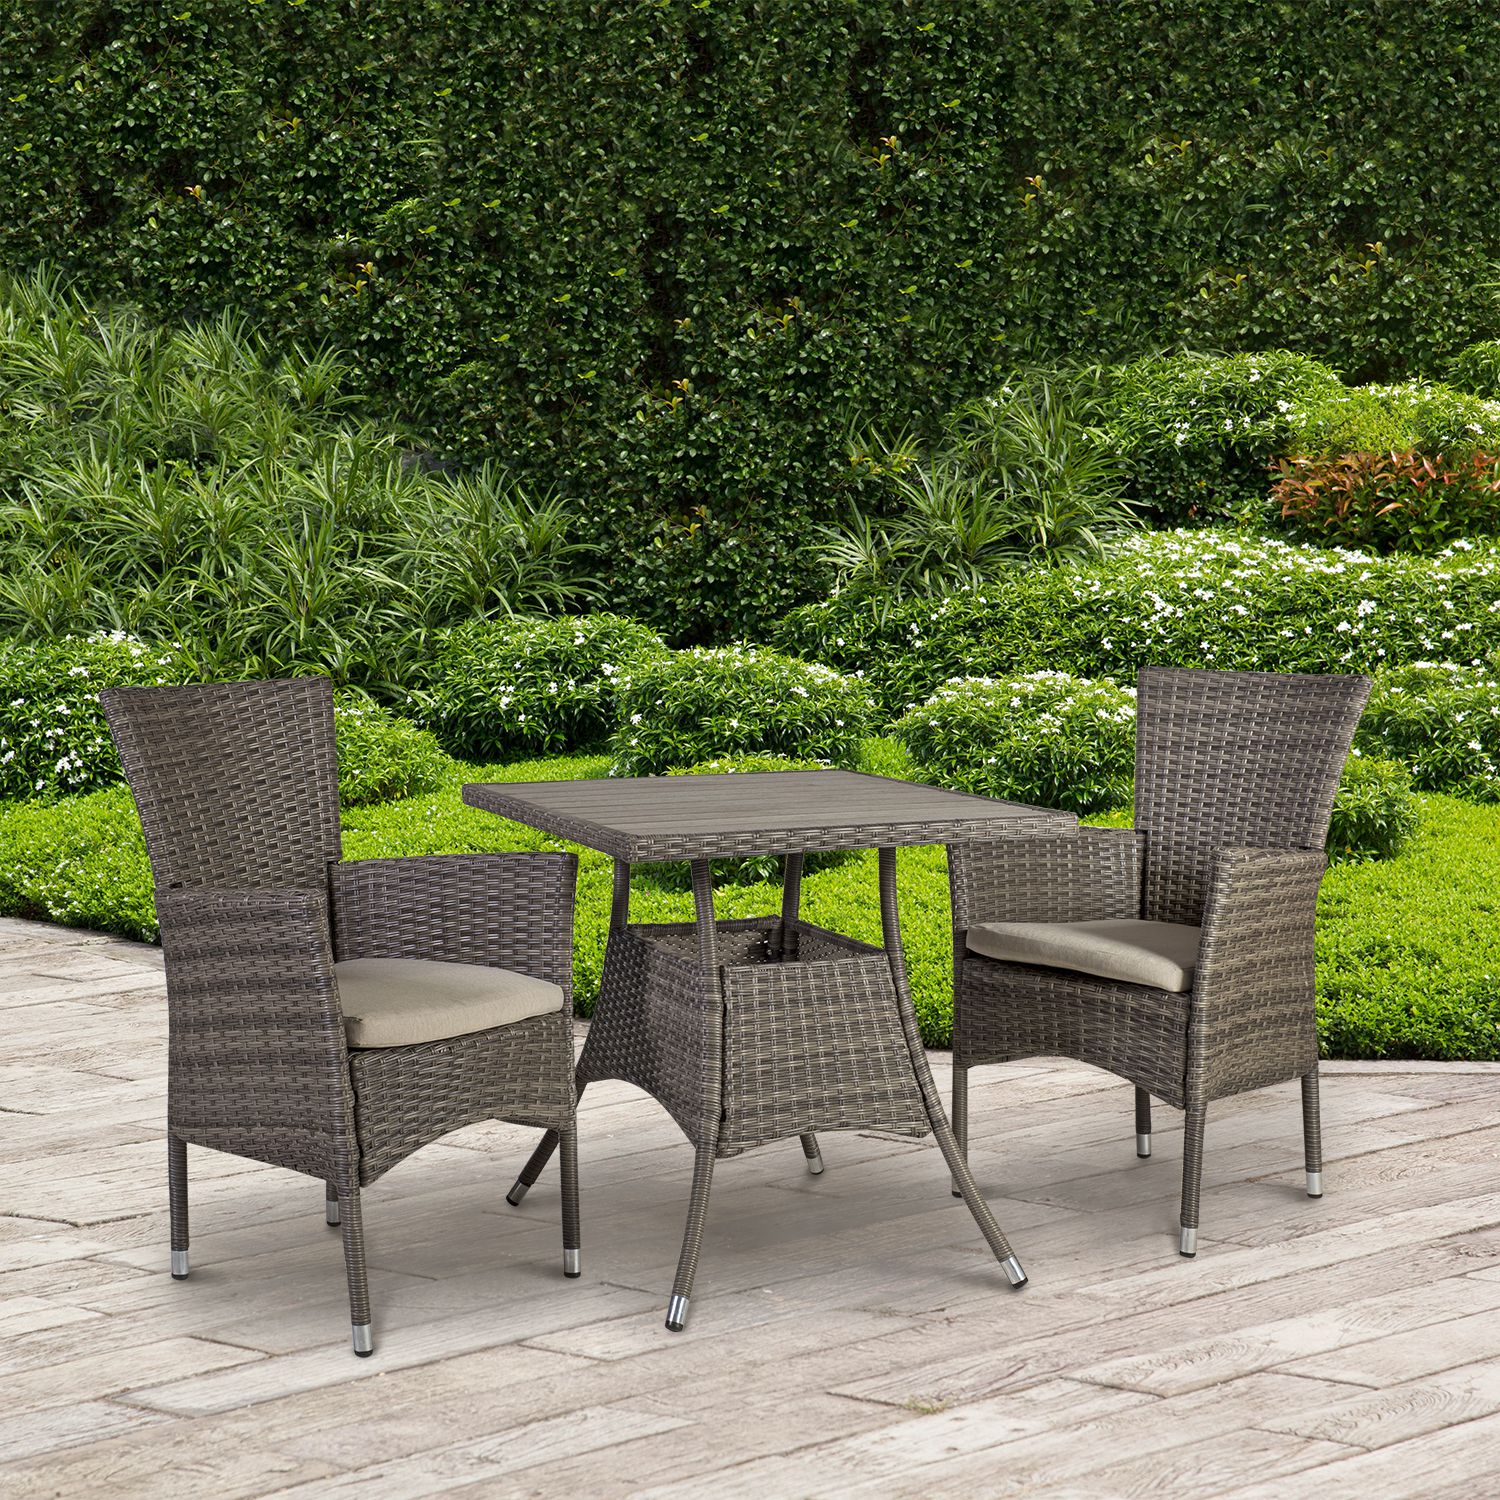 Sodo baldų komplektas PALOMA: stalas ir 2 kėdės, pilkšvai rudos spalvos.